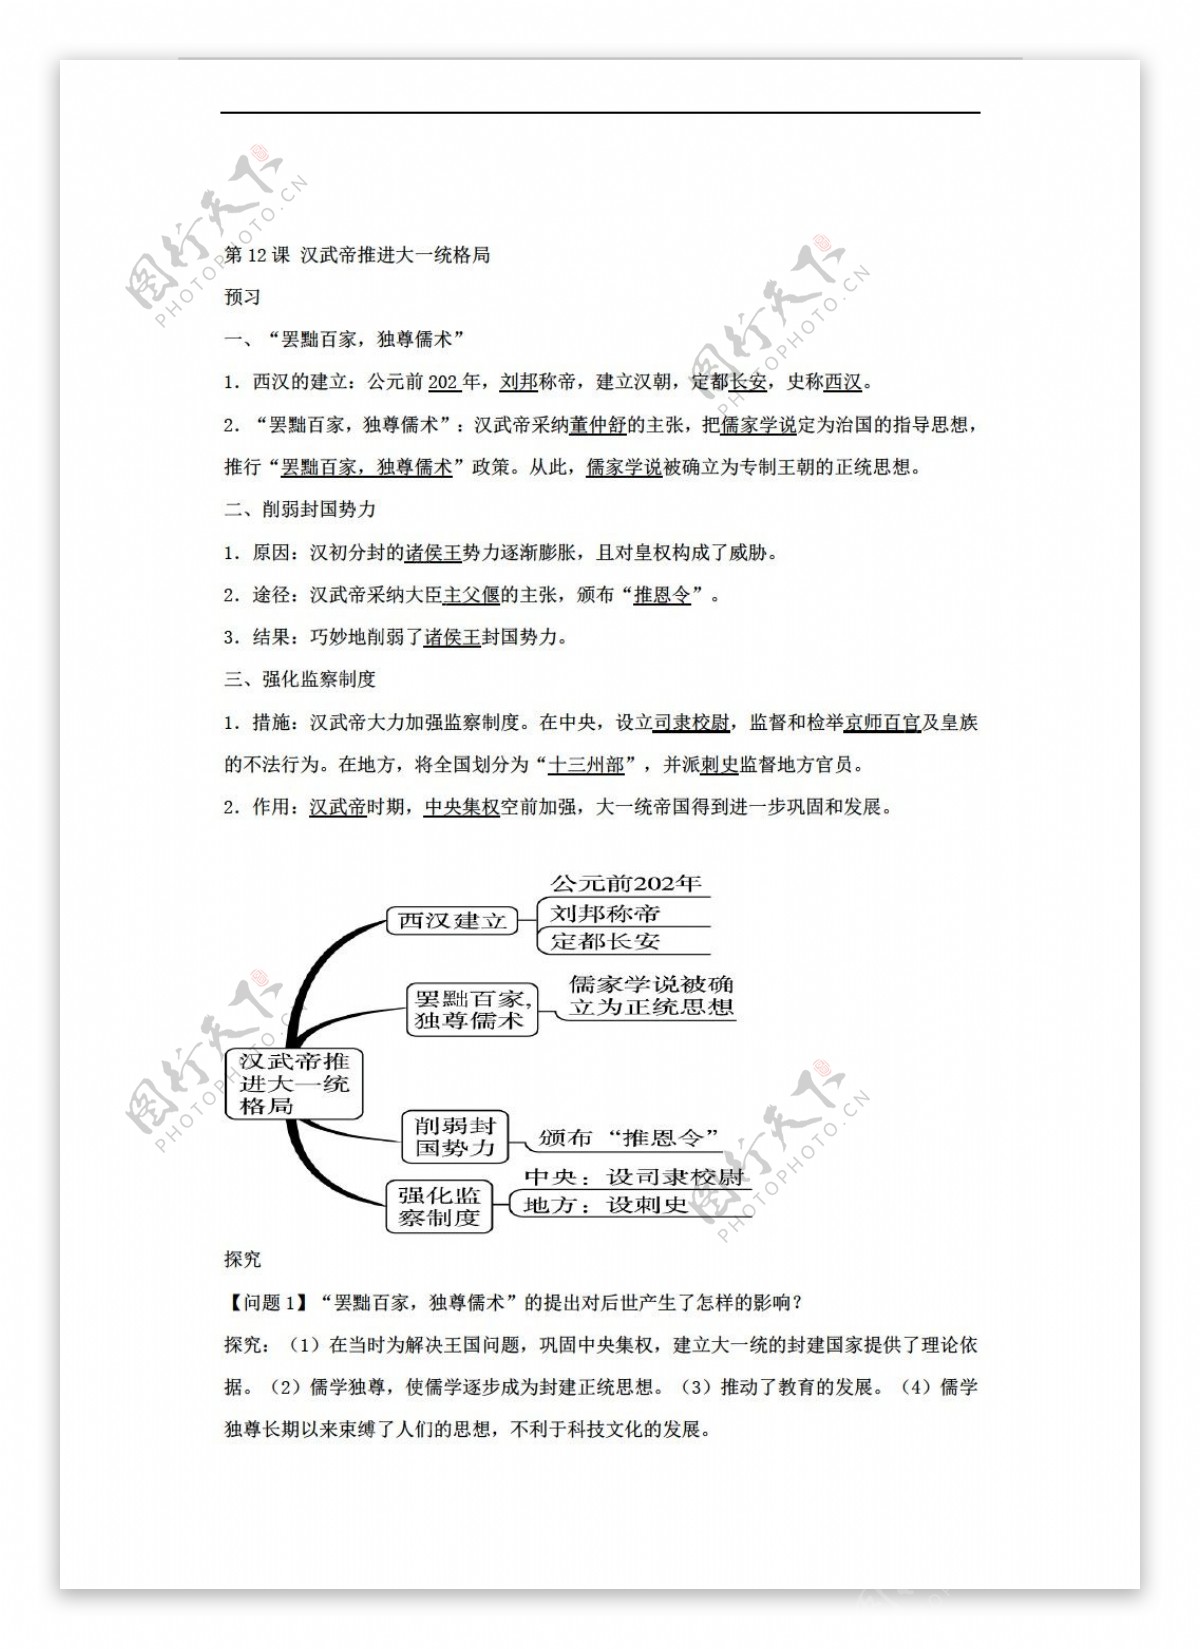 七年级上册历史黑龙江省七年级上册第12课汉武帝推进大一统格局